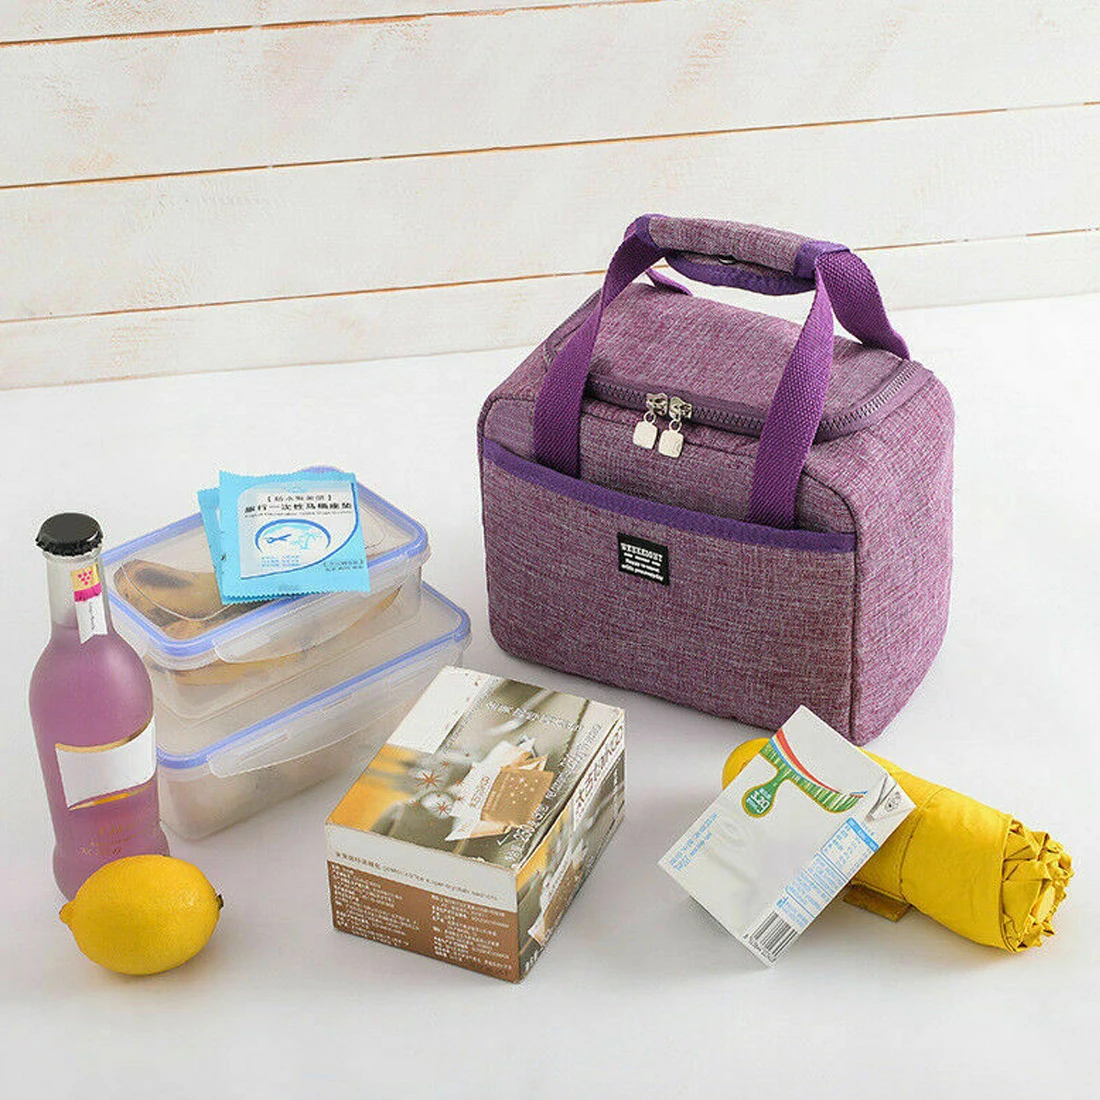 Aisputent термоизолированная сумка для обеда, сумка для хранения пикника, переносная коробка для обеда, походная сумка, сумка-холодильник, сумка для обеда